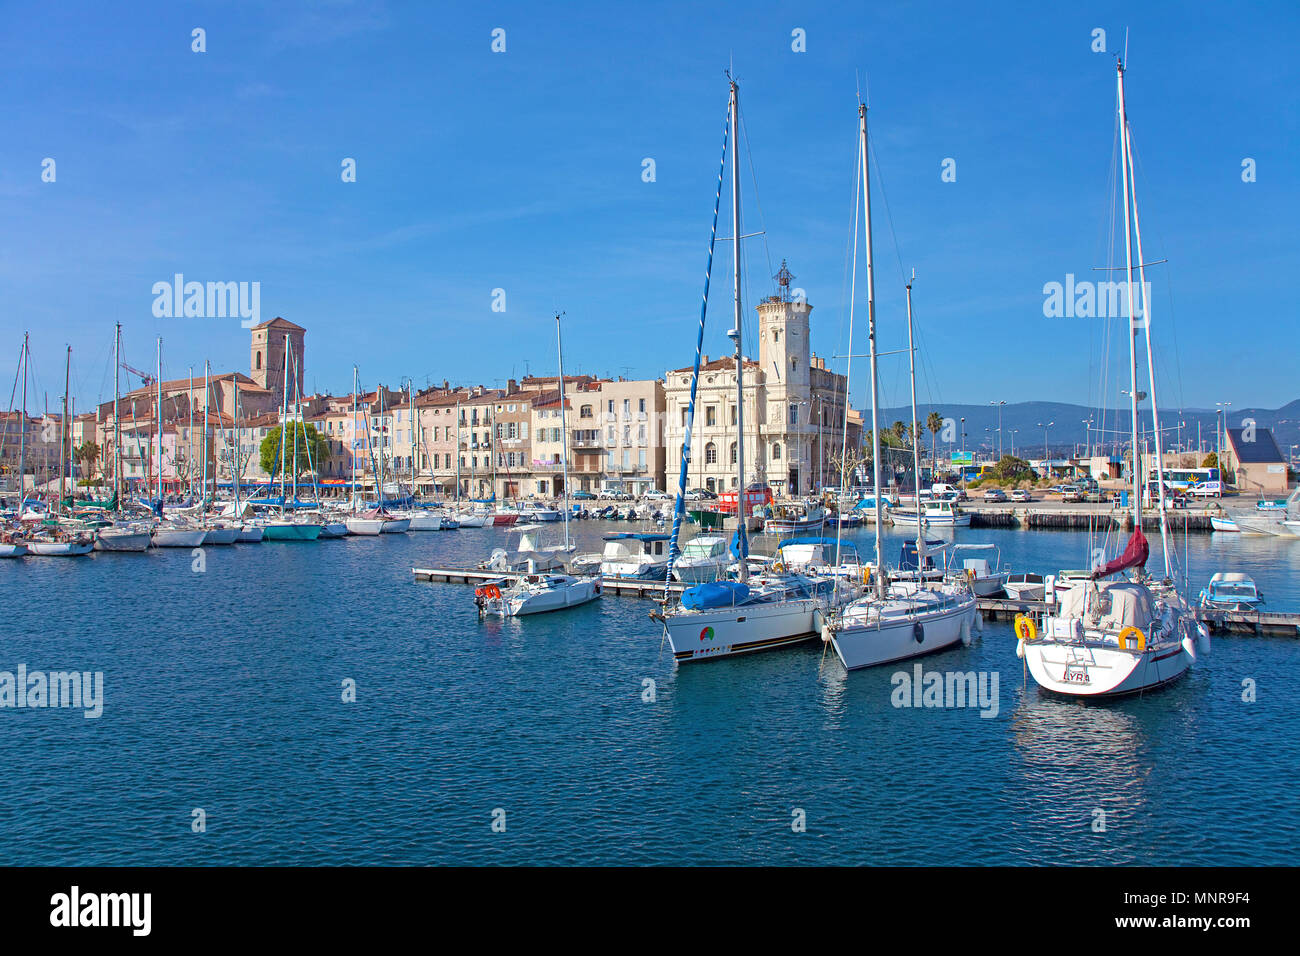 Hafen von La Ciotat, Bouches-du-Rhône der Region Provence-Alpes-Côte d'Azur, Südfrankreich, Frankreich, Europa Stockfoto